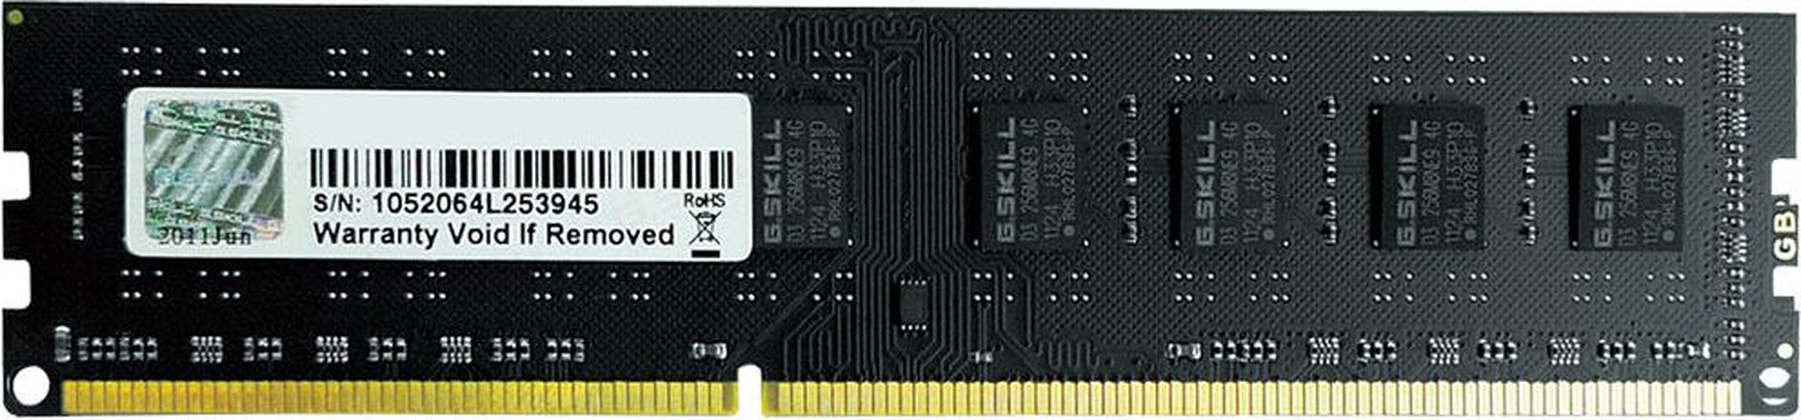 ОЗУ G.Skill F3-1600C11S-4GNTF3-1600C11S-4GNT DDR3 4 Гб (1x4 Гб)